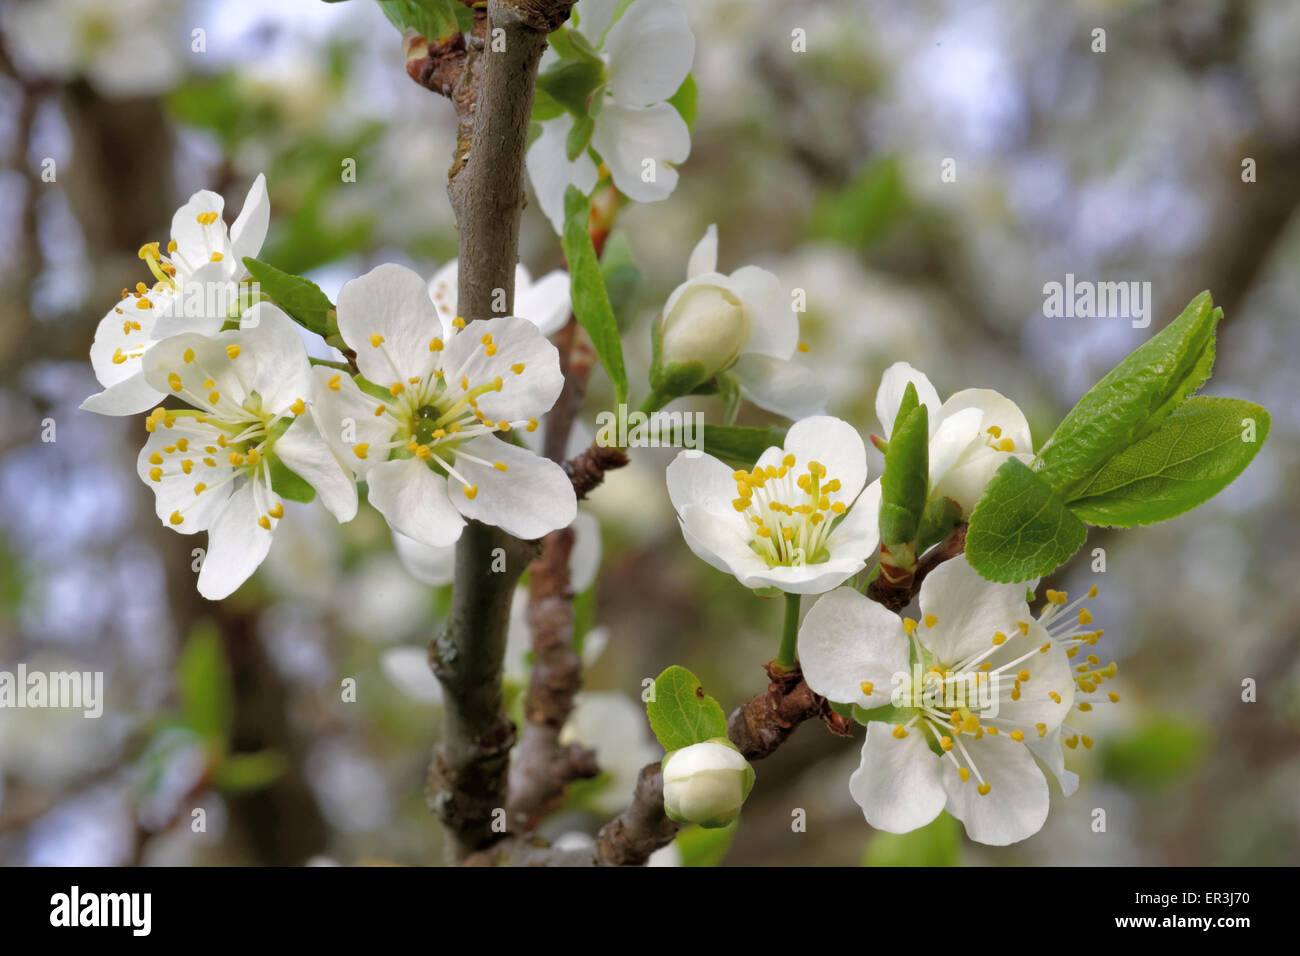 Plum is a fruit of the subgenus Prunus of the genus Prunus, flowers in May. Stock Photo